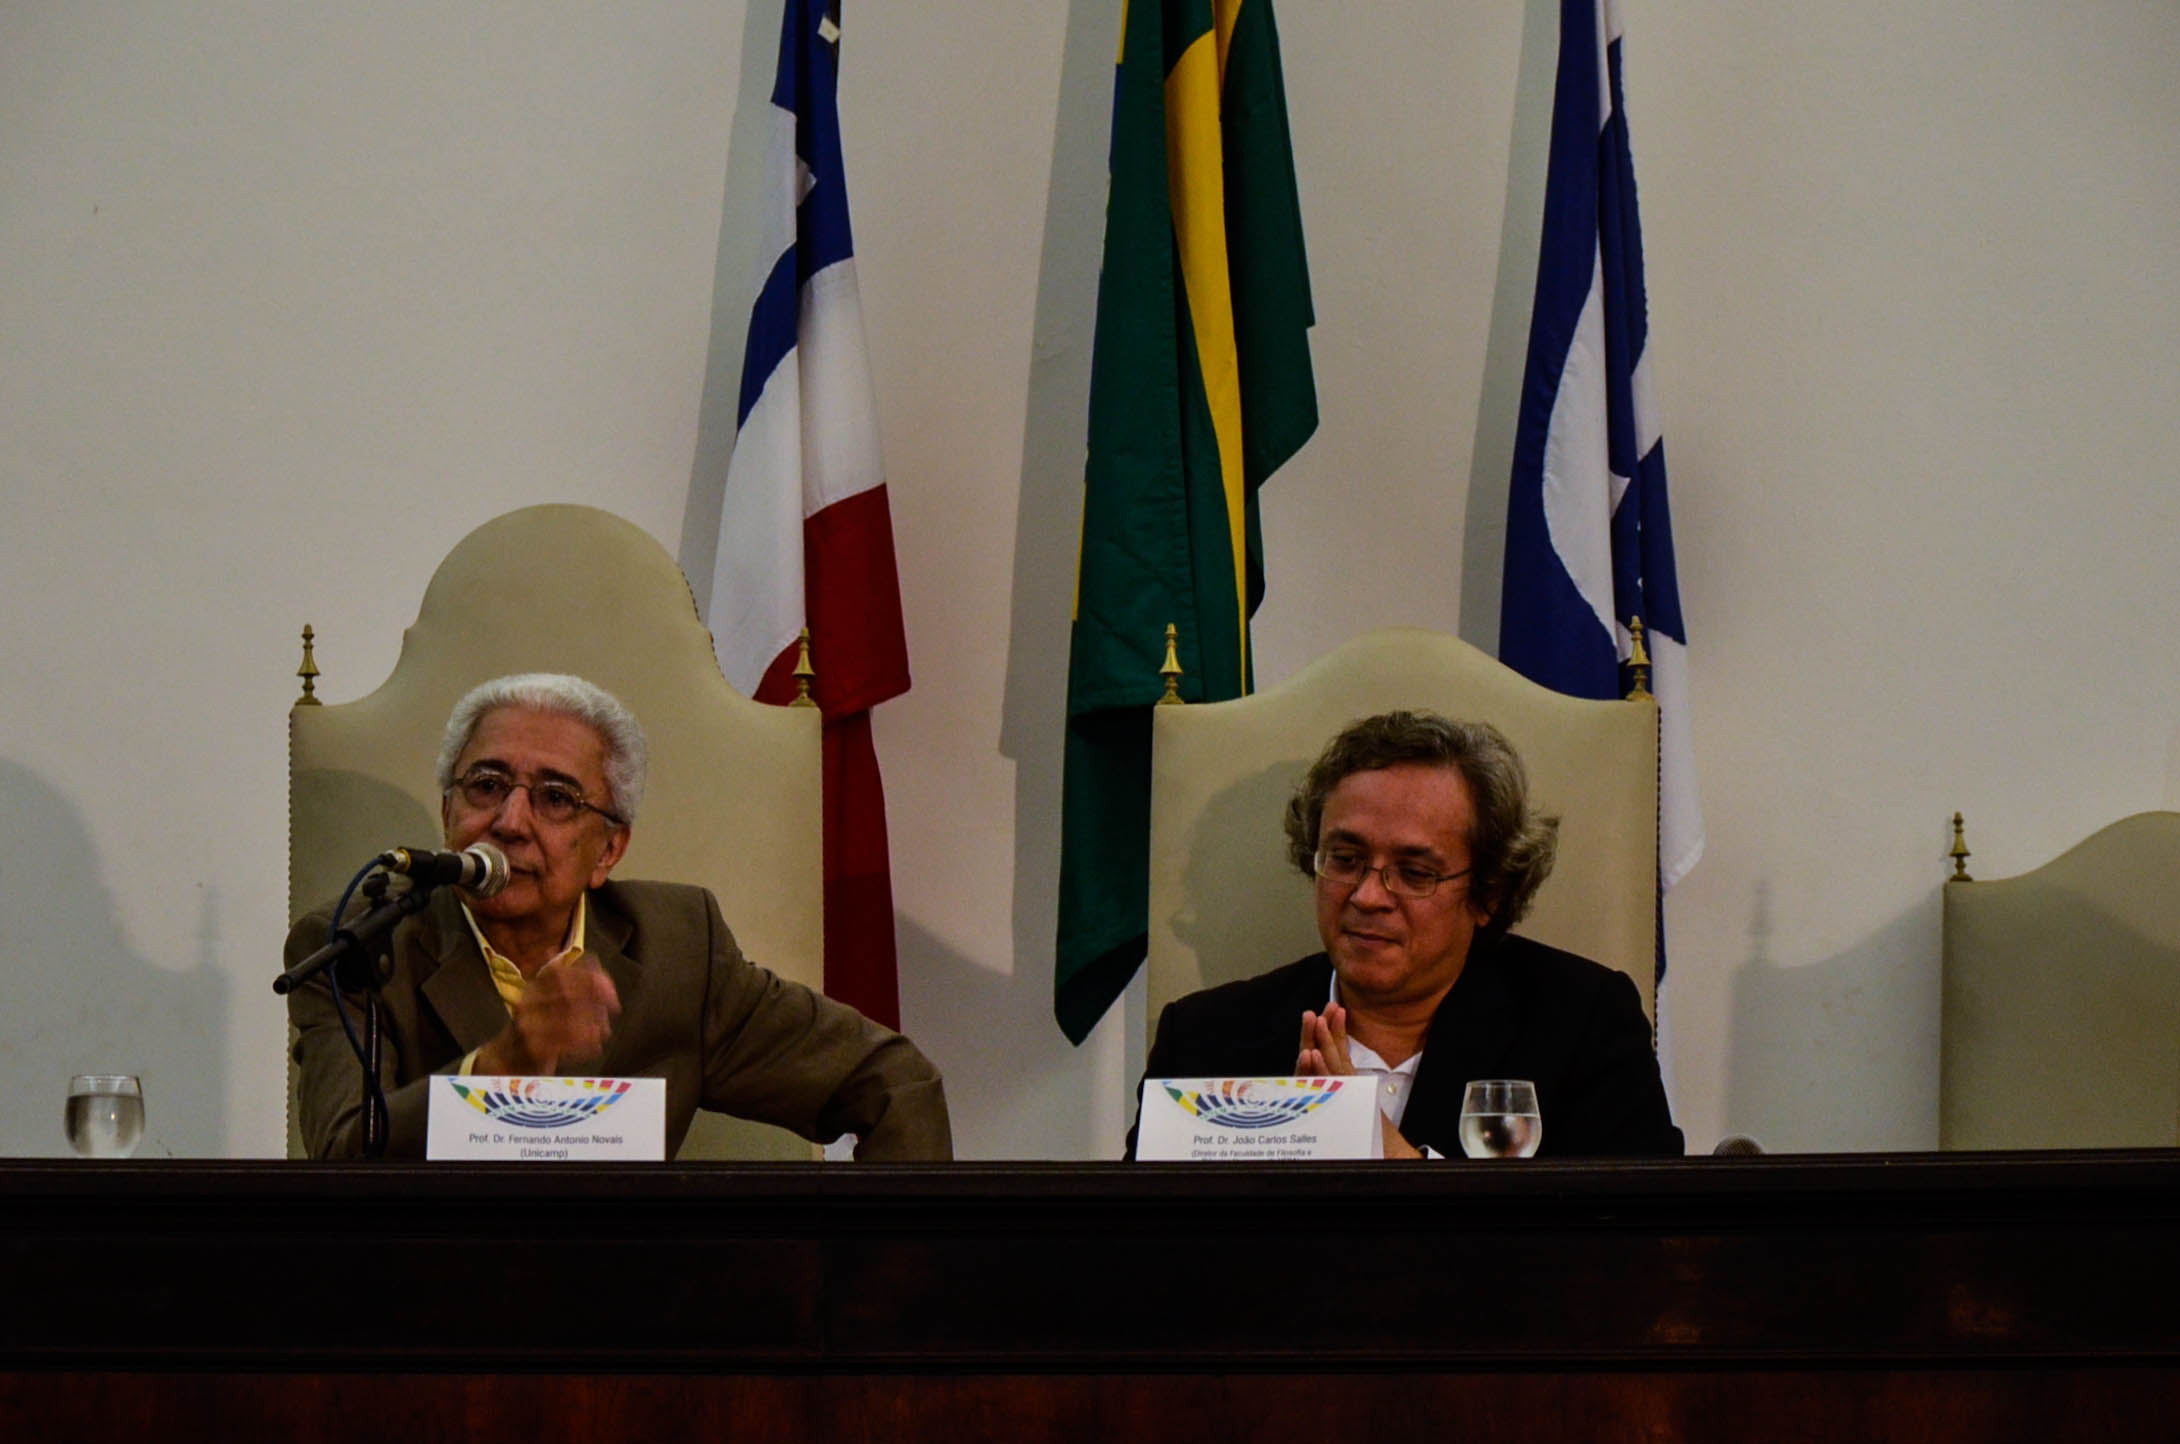 O professor Antônio Novais (à esquerda), fala sobre as interpretações da independência do Brasil.
Foto: Virgínia Andrade